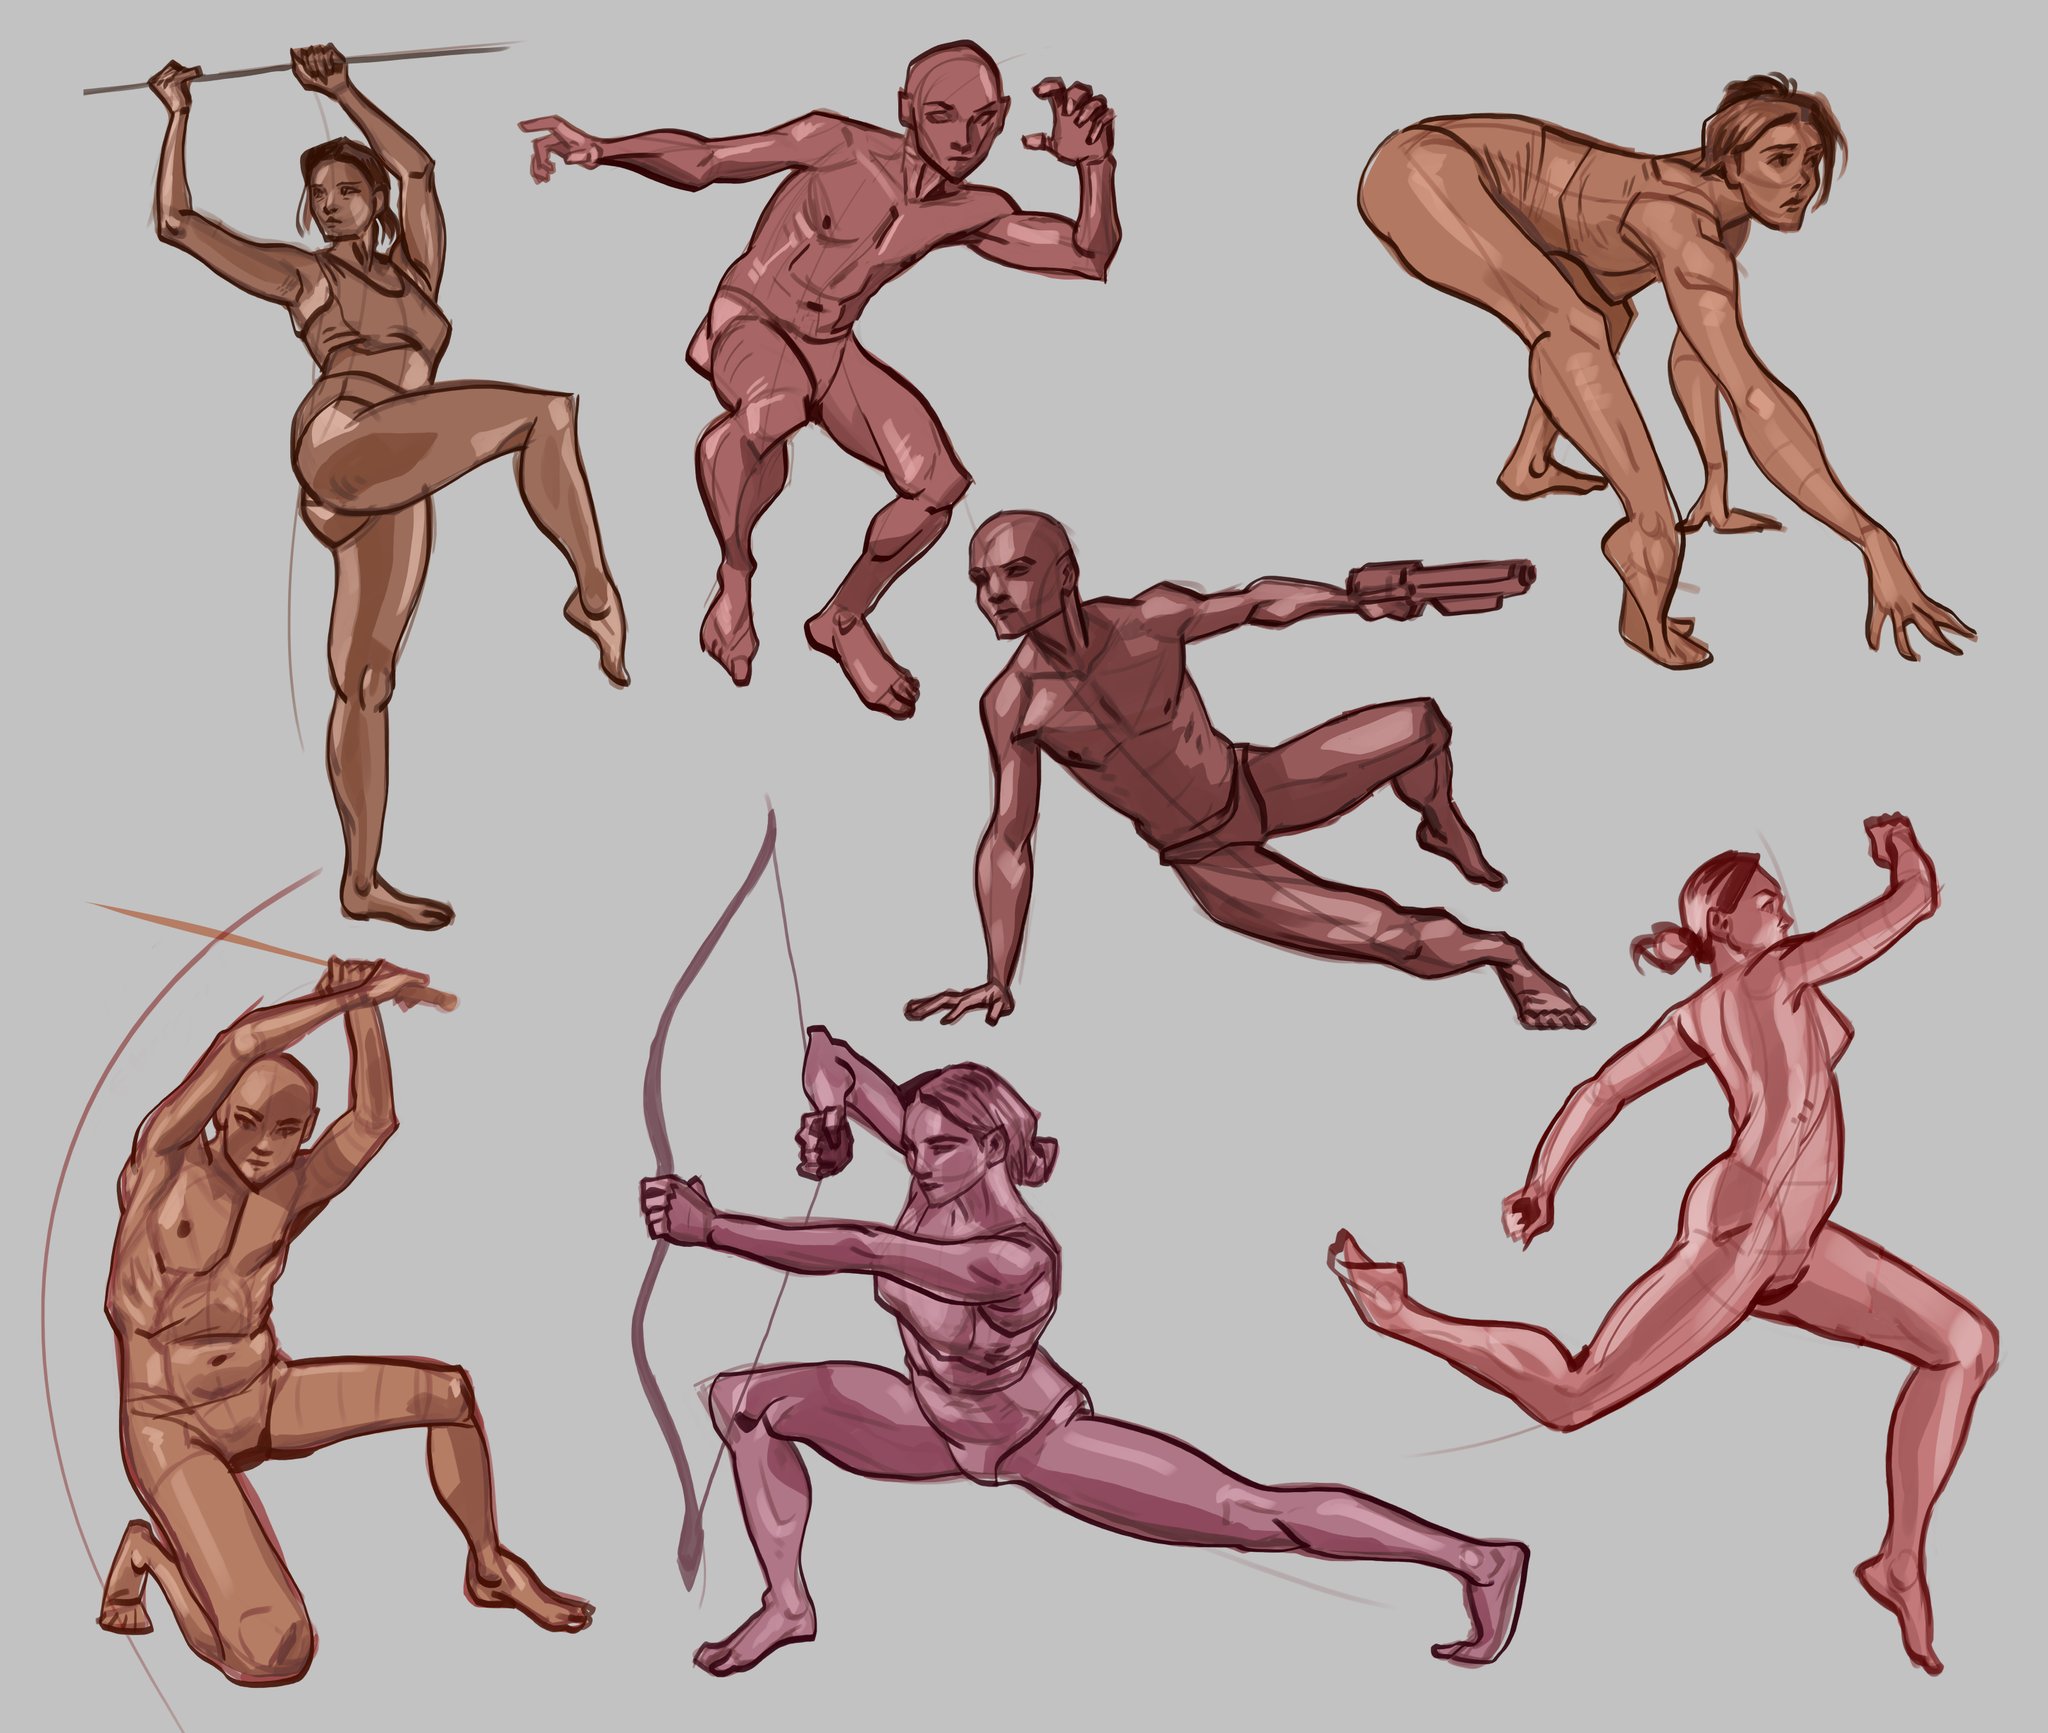 Gesture Drawings of People - Bing Images | Drawing people, Figure drawing  reference, Human figure drawing